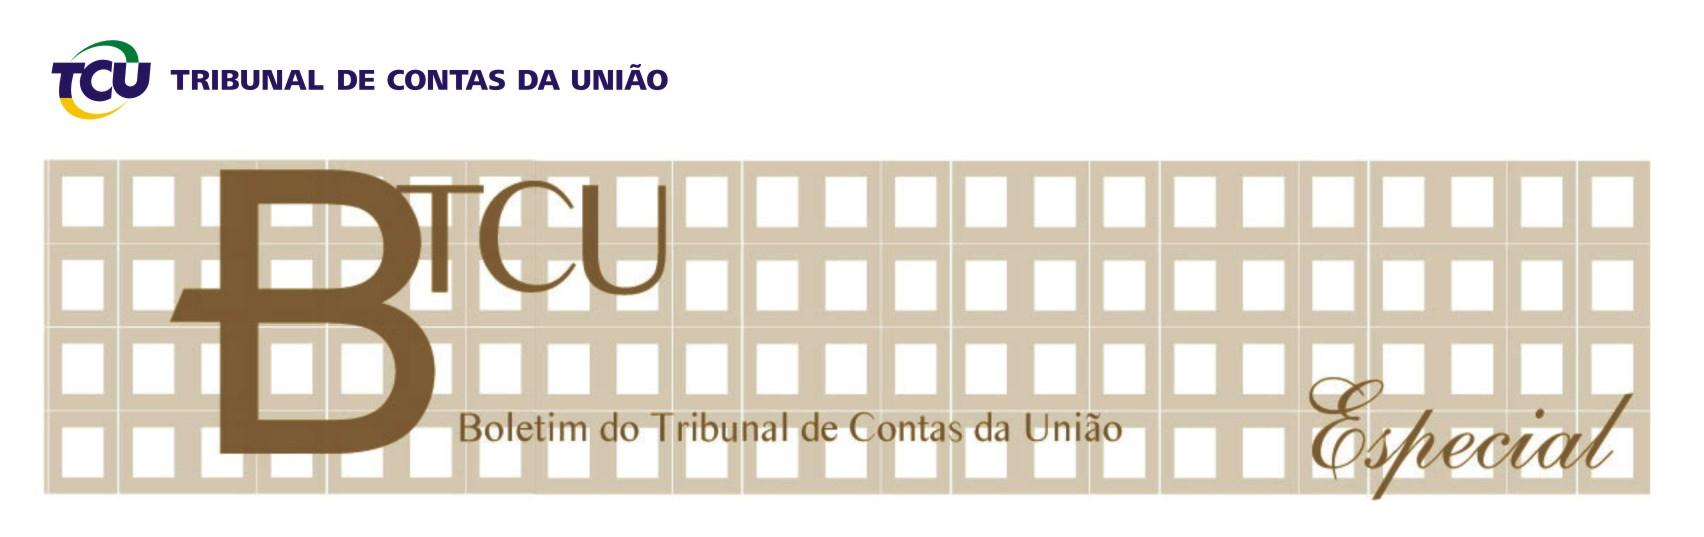 Brasília, 2 de janeiro de 2015 - Ano XLVIII - Nº 1 REGIMENTO INTERNO DO